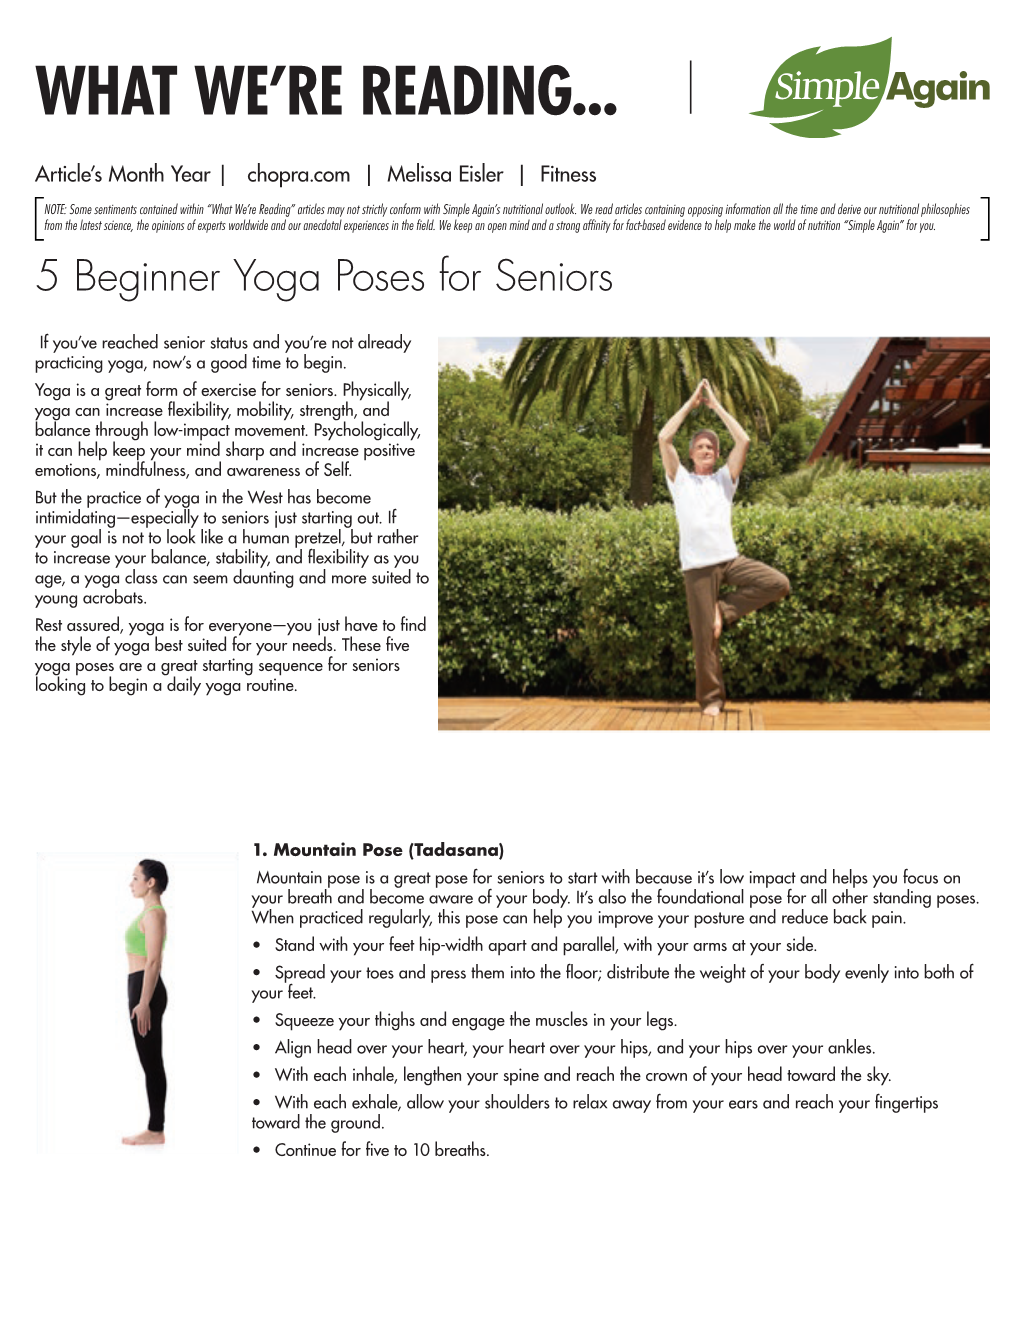 5 Beginner Yoga Poses for Seniors.Indd